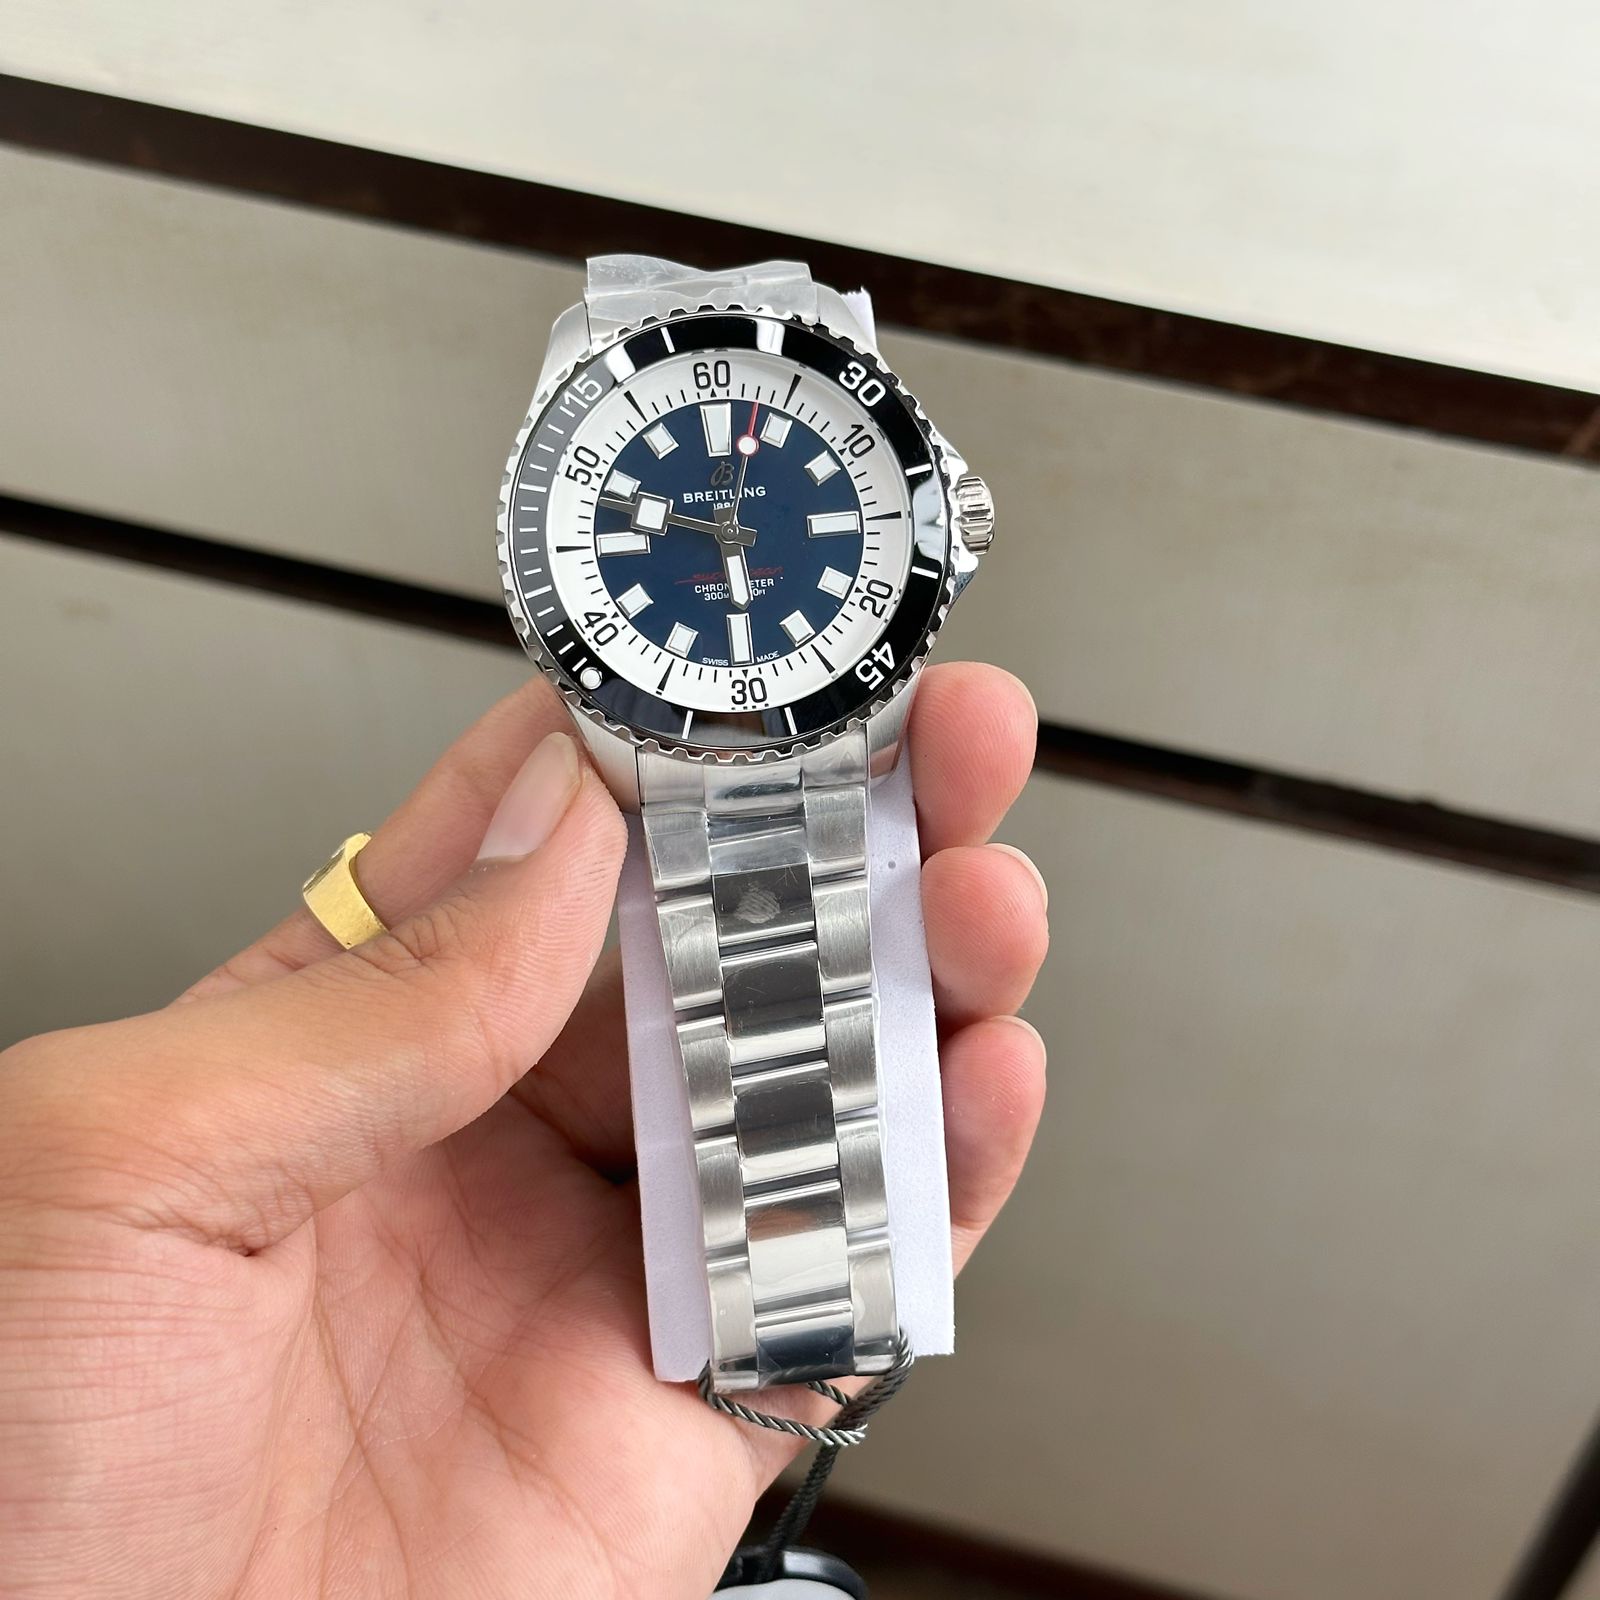 Amazing Premium Fully Automatic watch - AmazingBaba